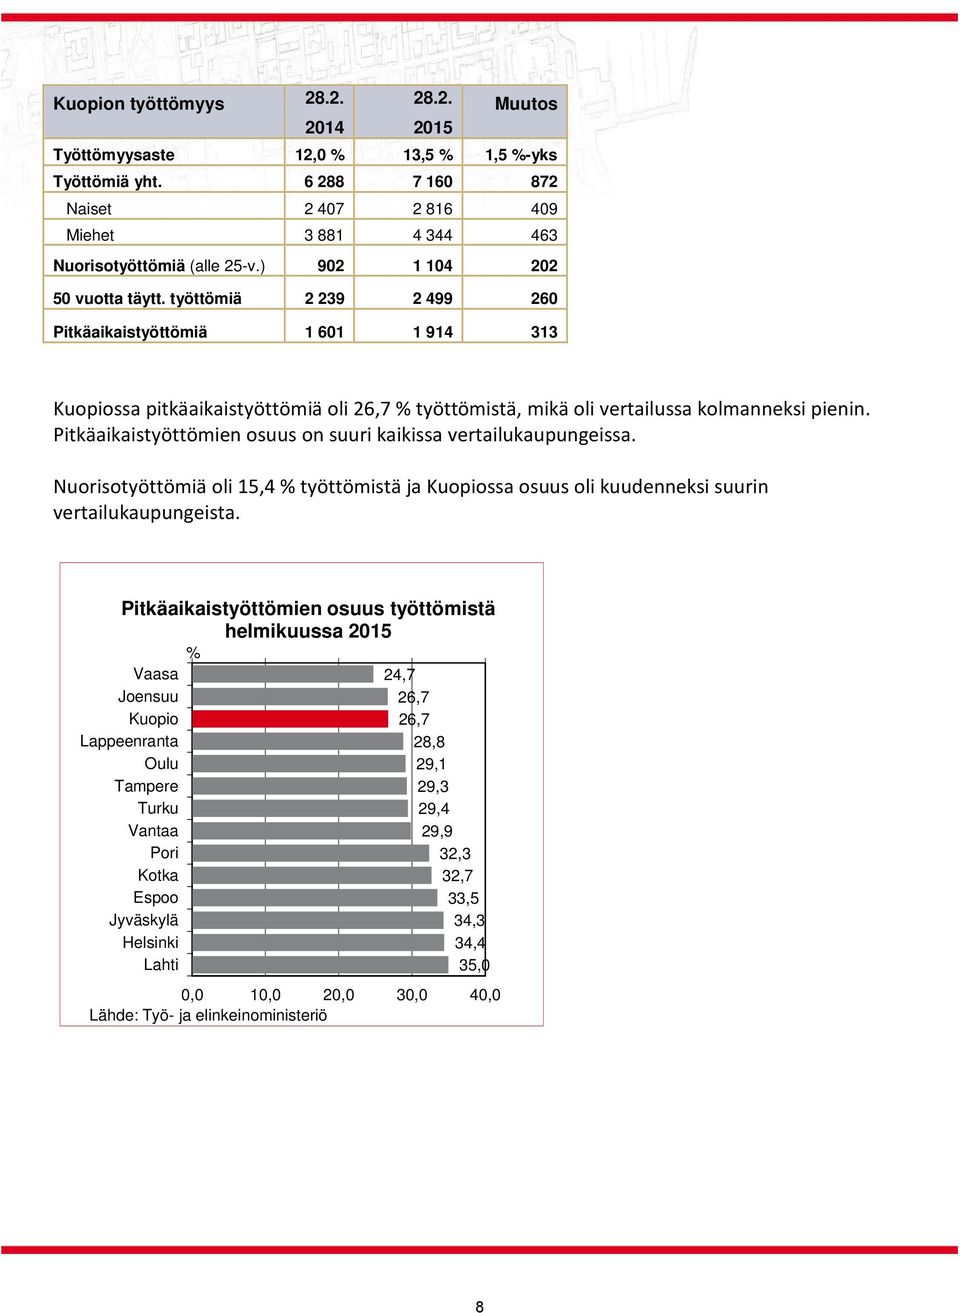 Pitkäaikaistyöttömien osuus on suuri kaikissa vertailukaupungeissa. Nuorisotyöttömiä oli 15,4 % työttömistä ja Kuopiossa osuus oli kuudenneksi suurin vertailukaupungeista.